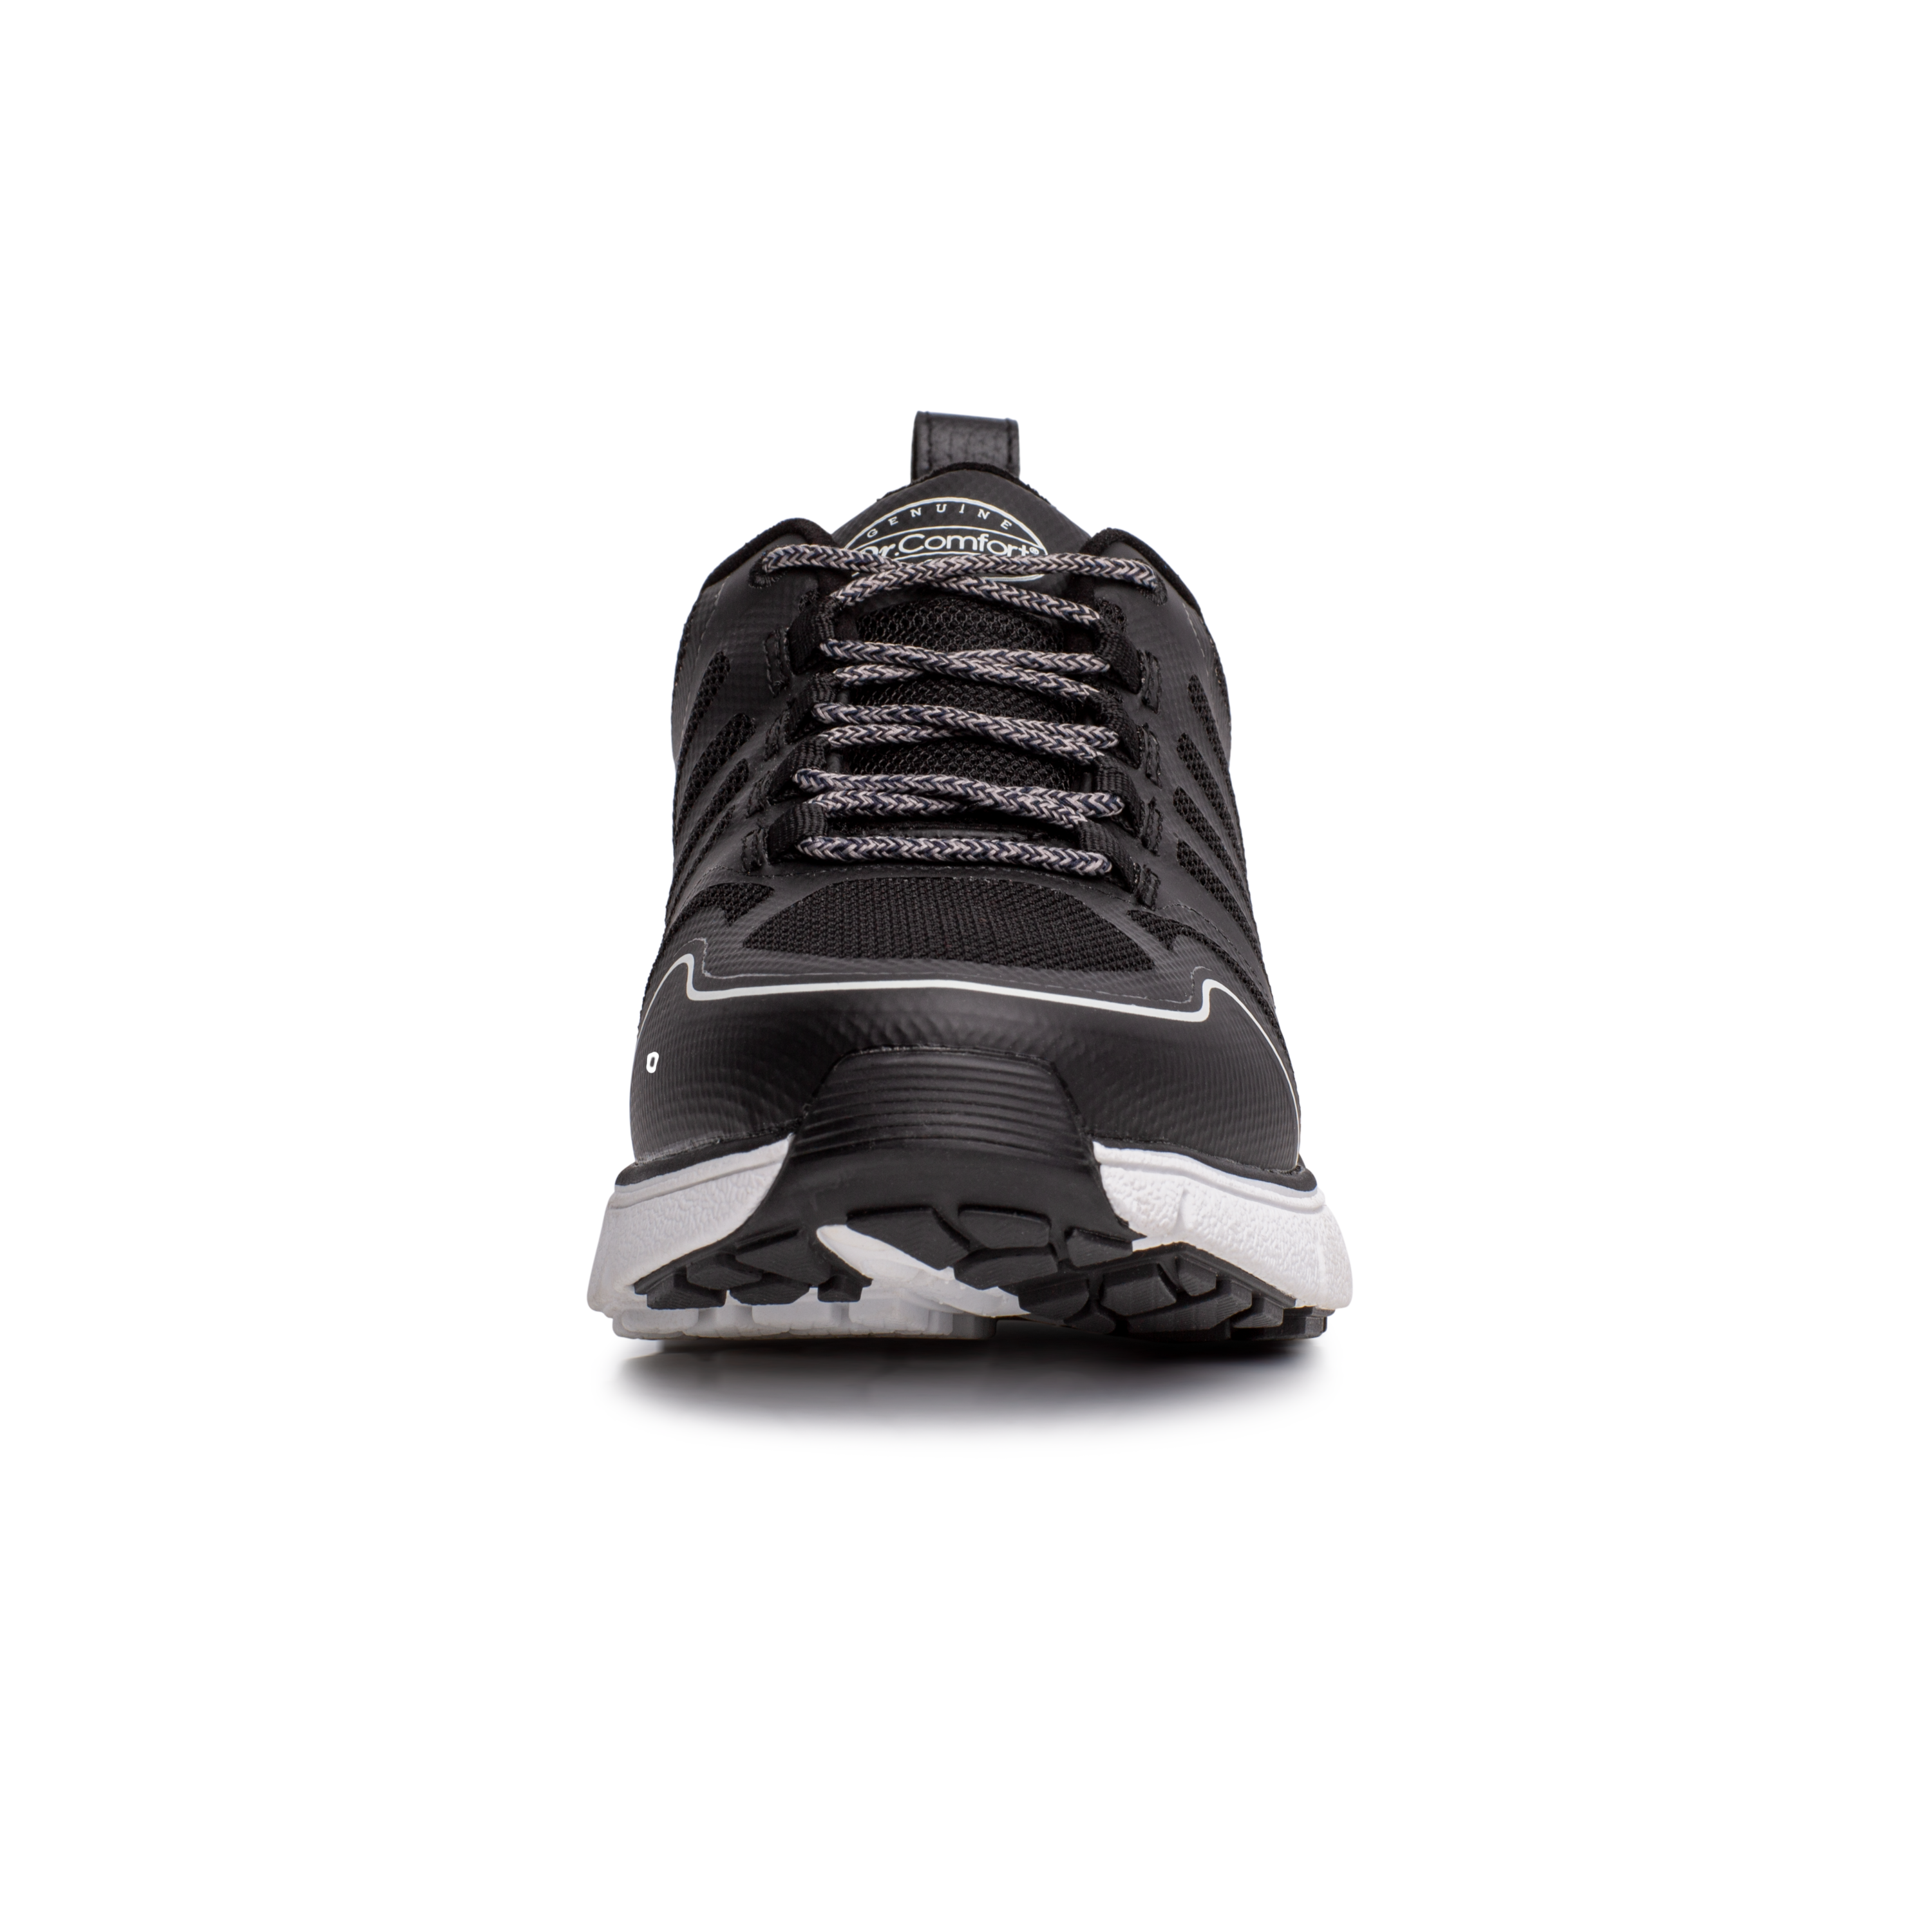 Zusatzbild DR. COMFORT® Grace schwarz, vorne, Orthopädische Schuhe, leichter Aktivschuh mit stabilisierender und dämpfender Laufsohlenkonstruktion für einen sicheren Gang